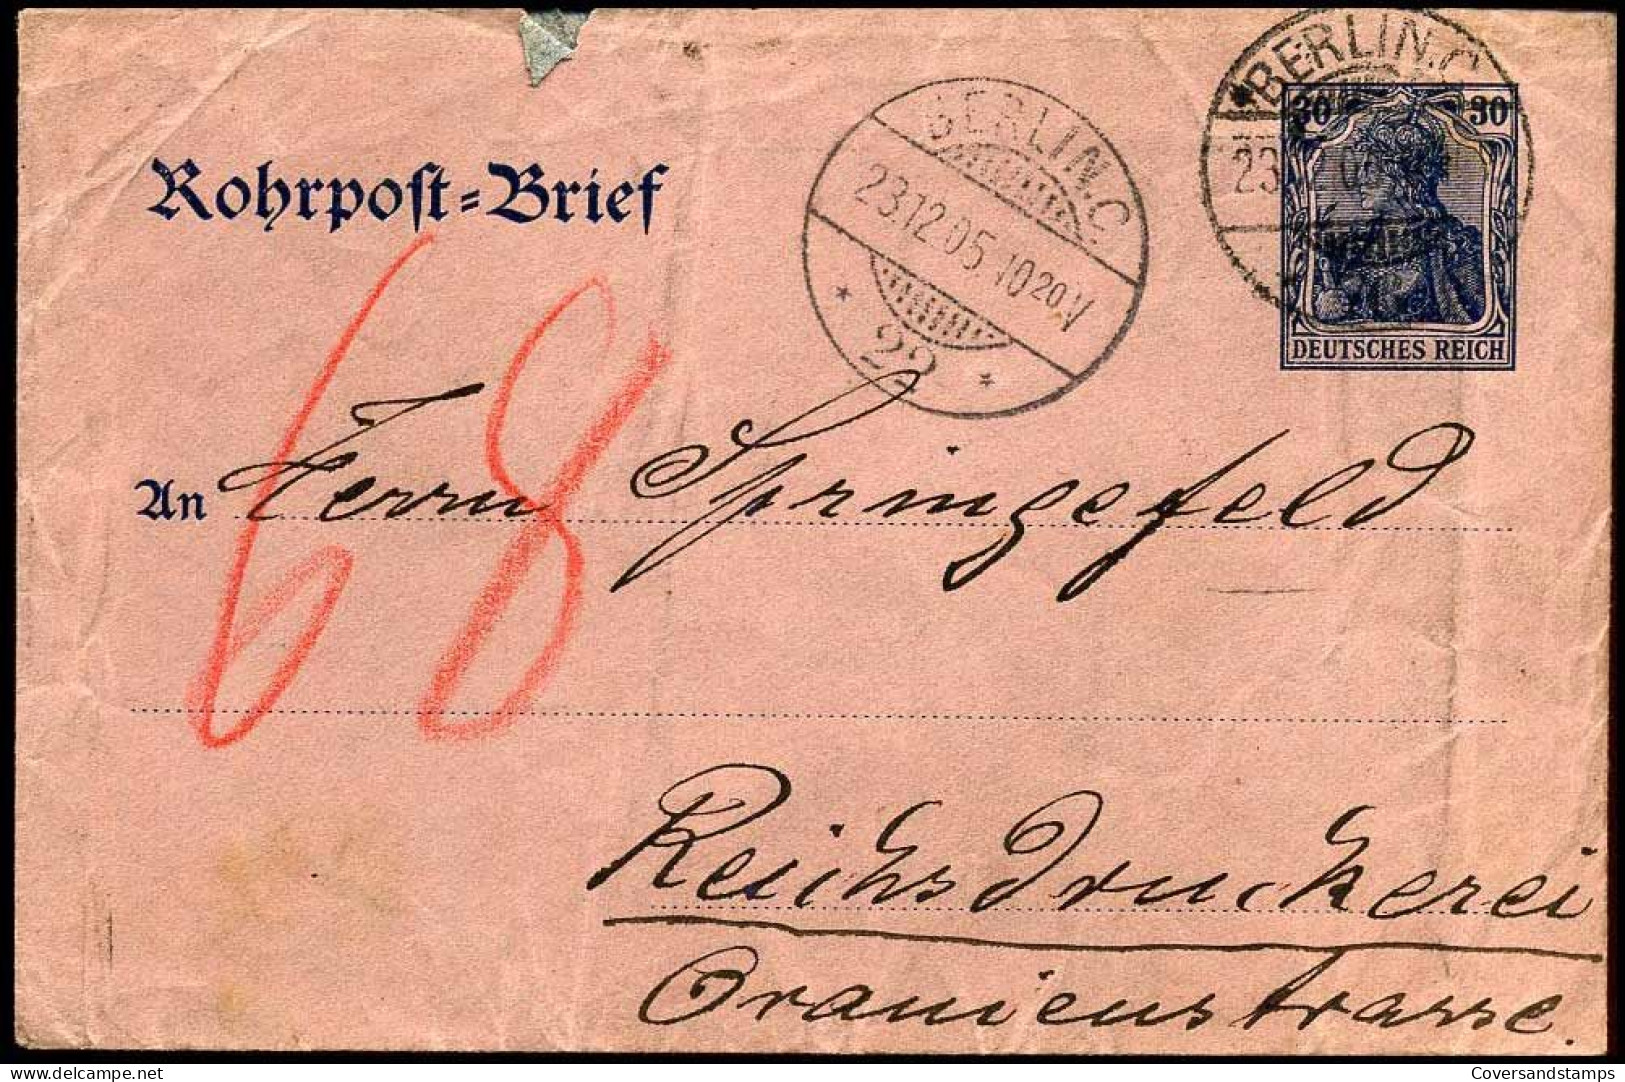 Rohrpost Brief - Berlin - Reichsdruckerei - Briefe